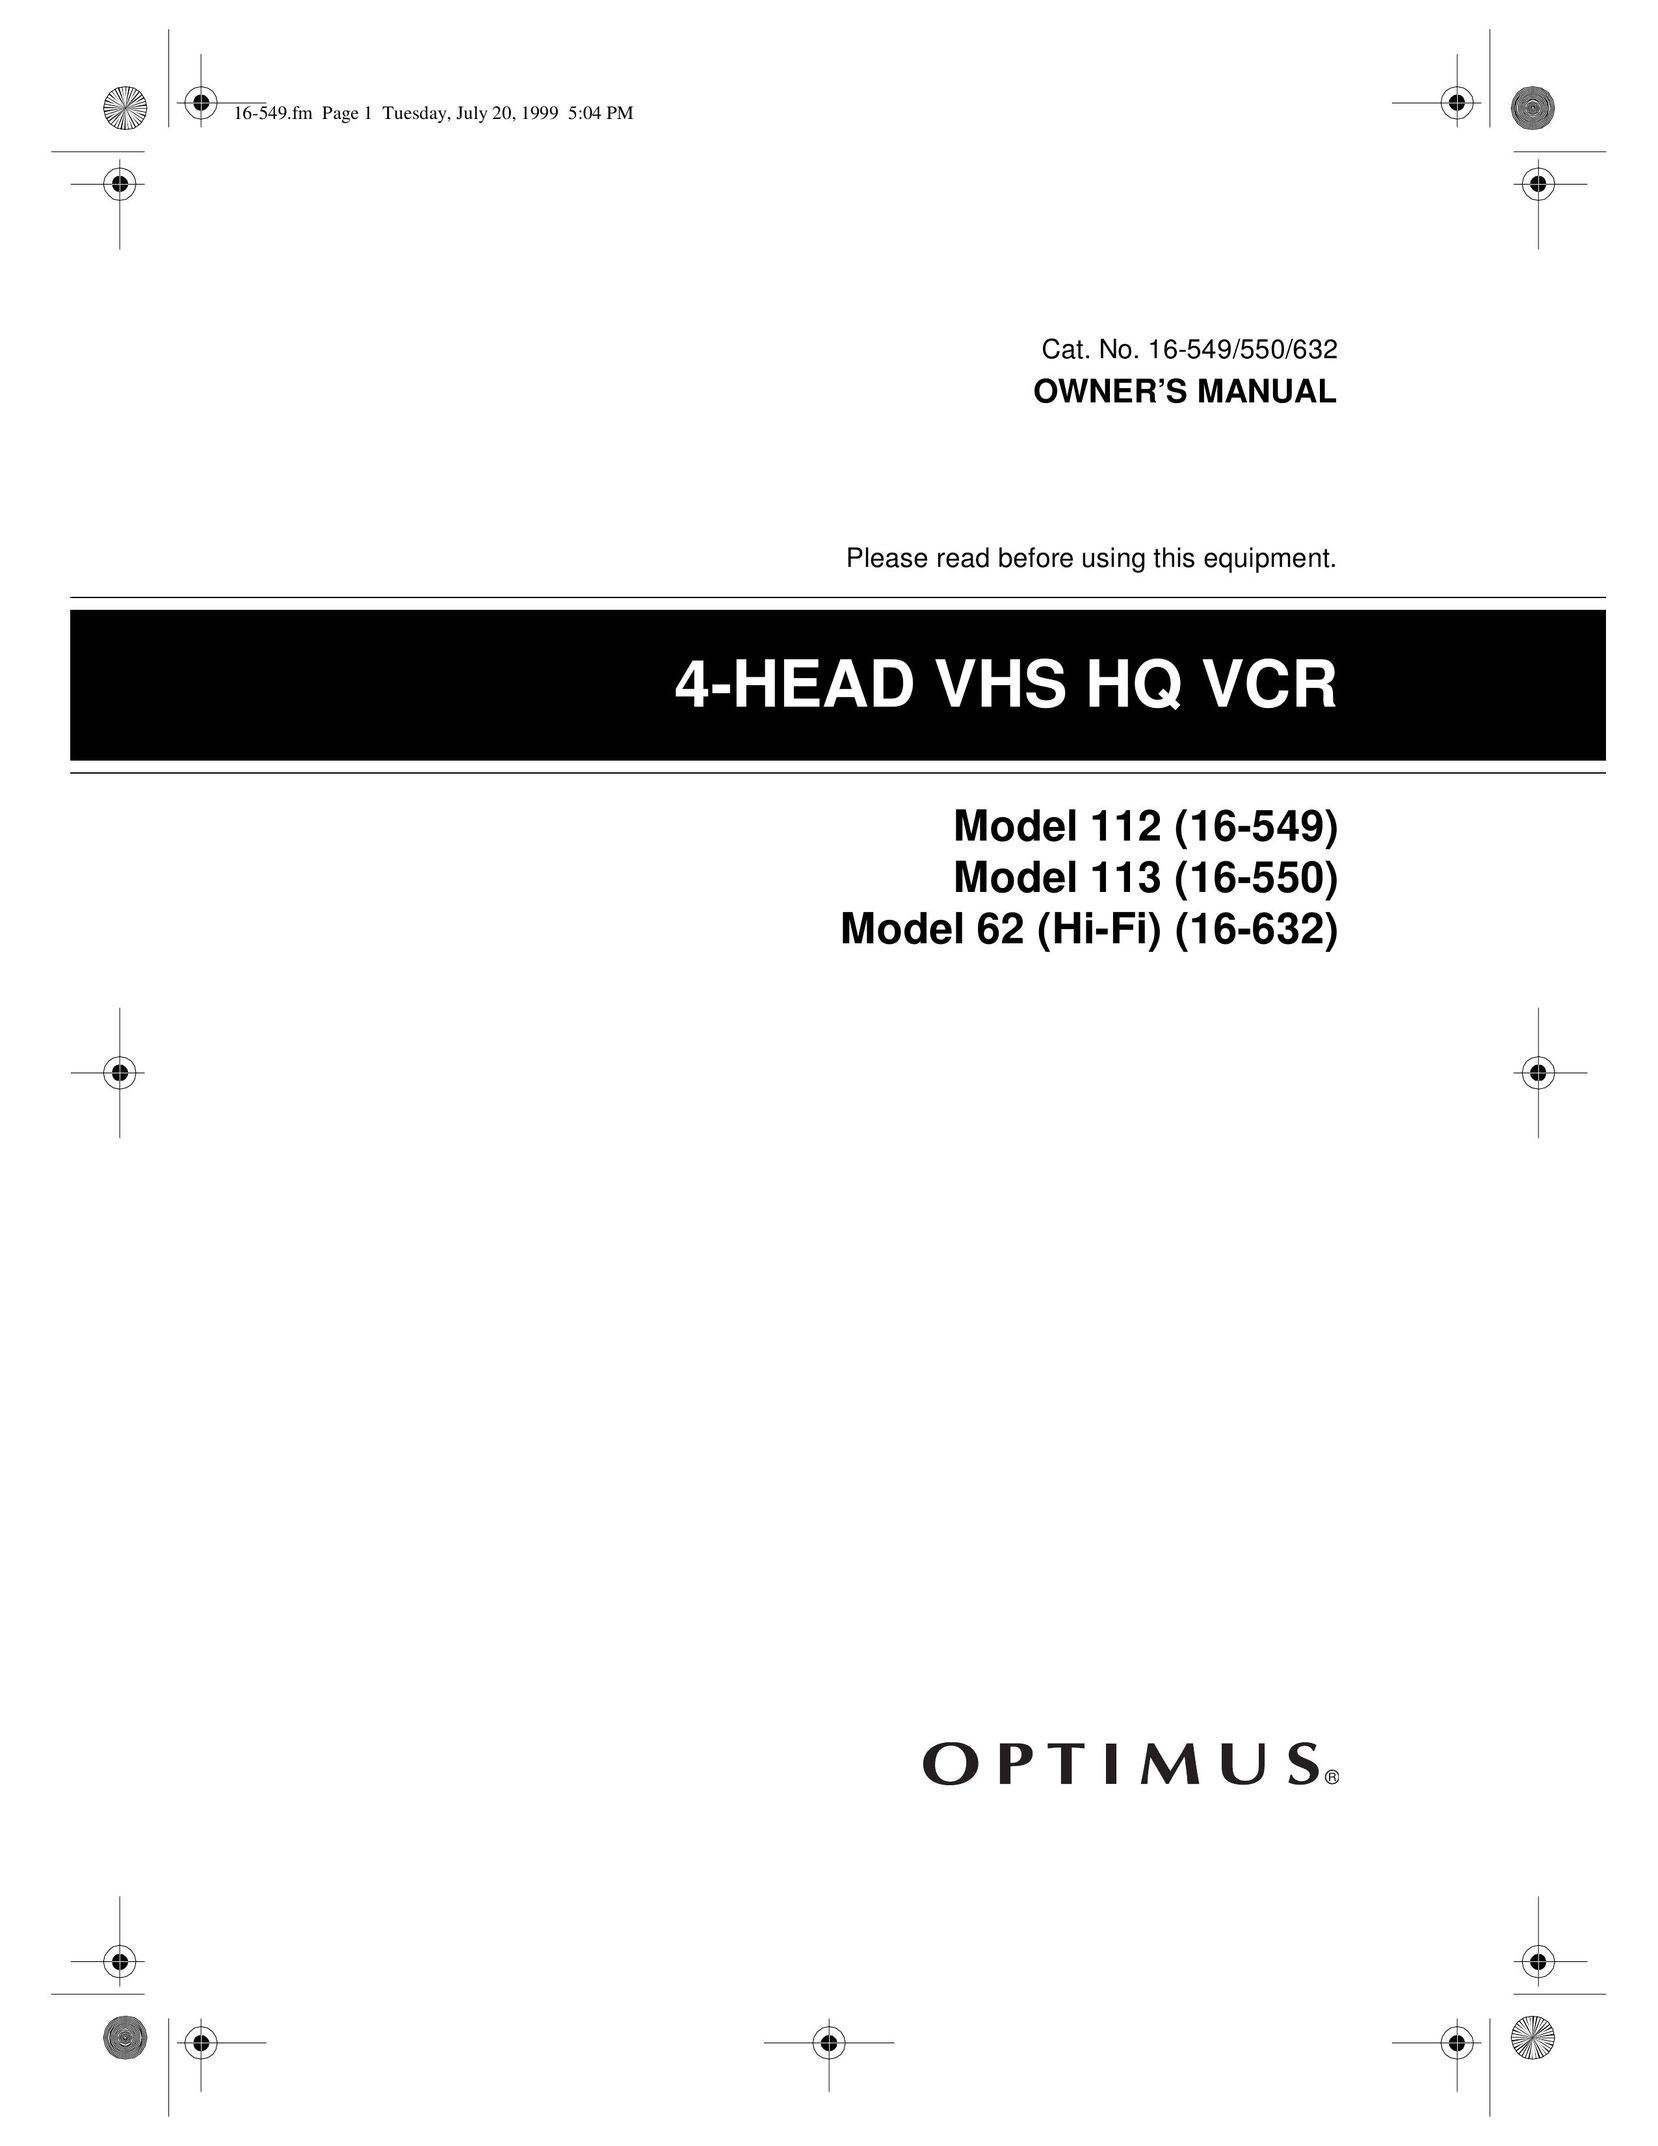 Optimus 113 (16-550) VCR User Manual